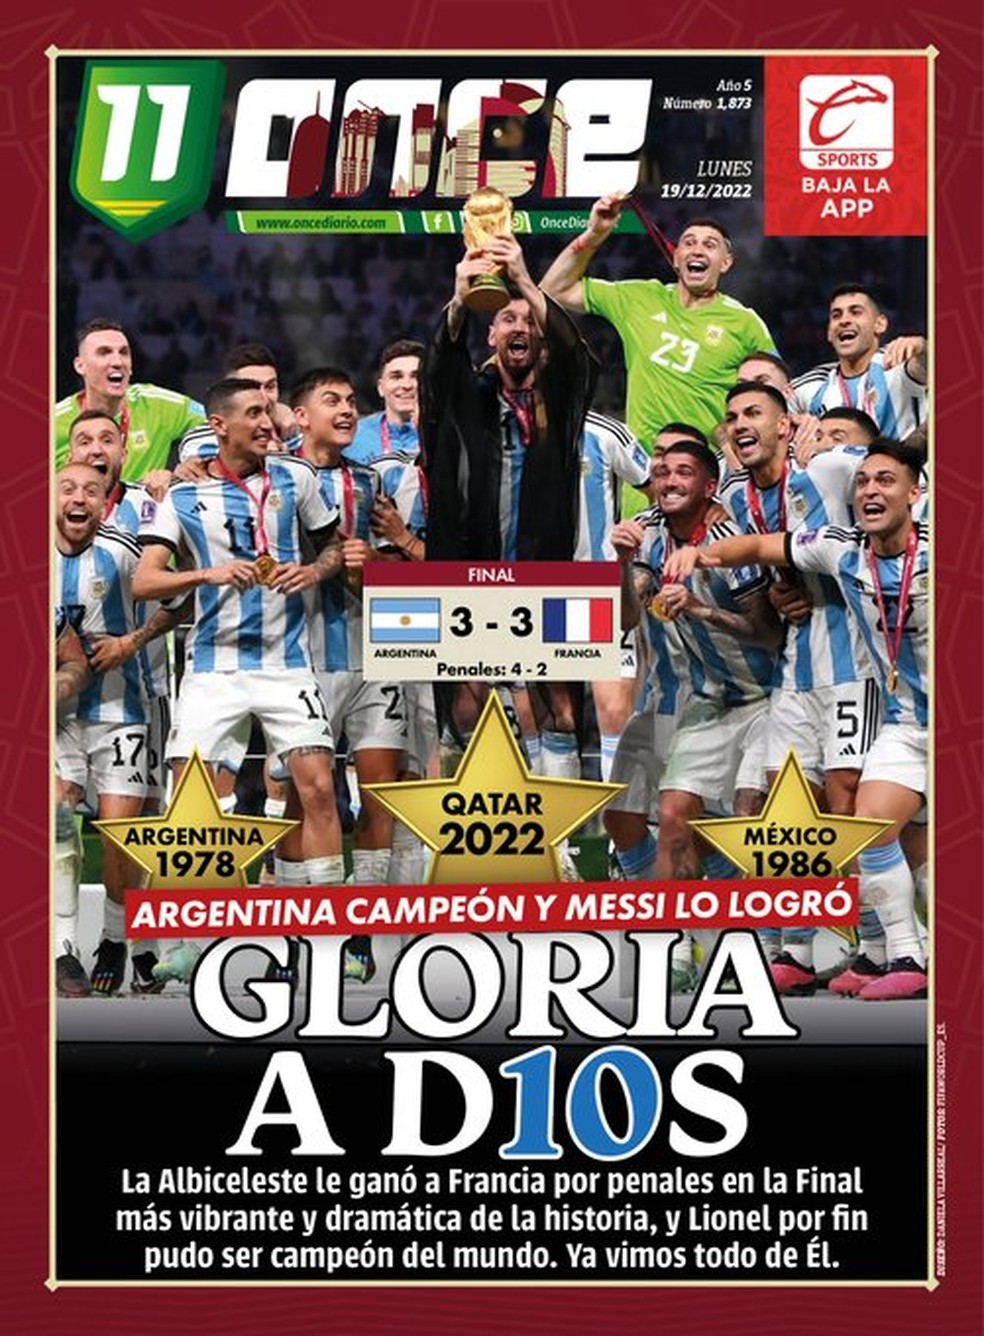 Jornada de Messi pelo seu primeiro título da Copa do Mundo é atração do  Grupo C - Jornal Grande Bahia (JGB)